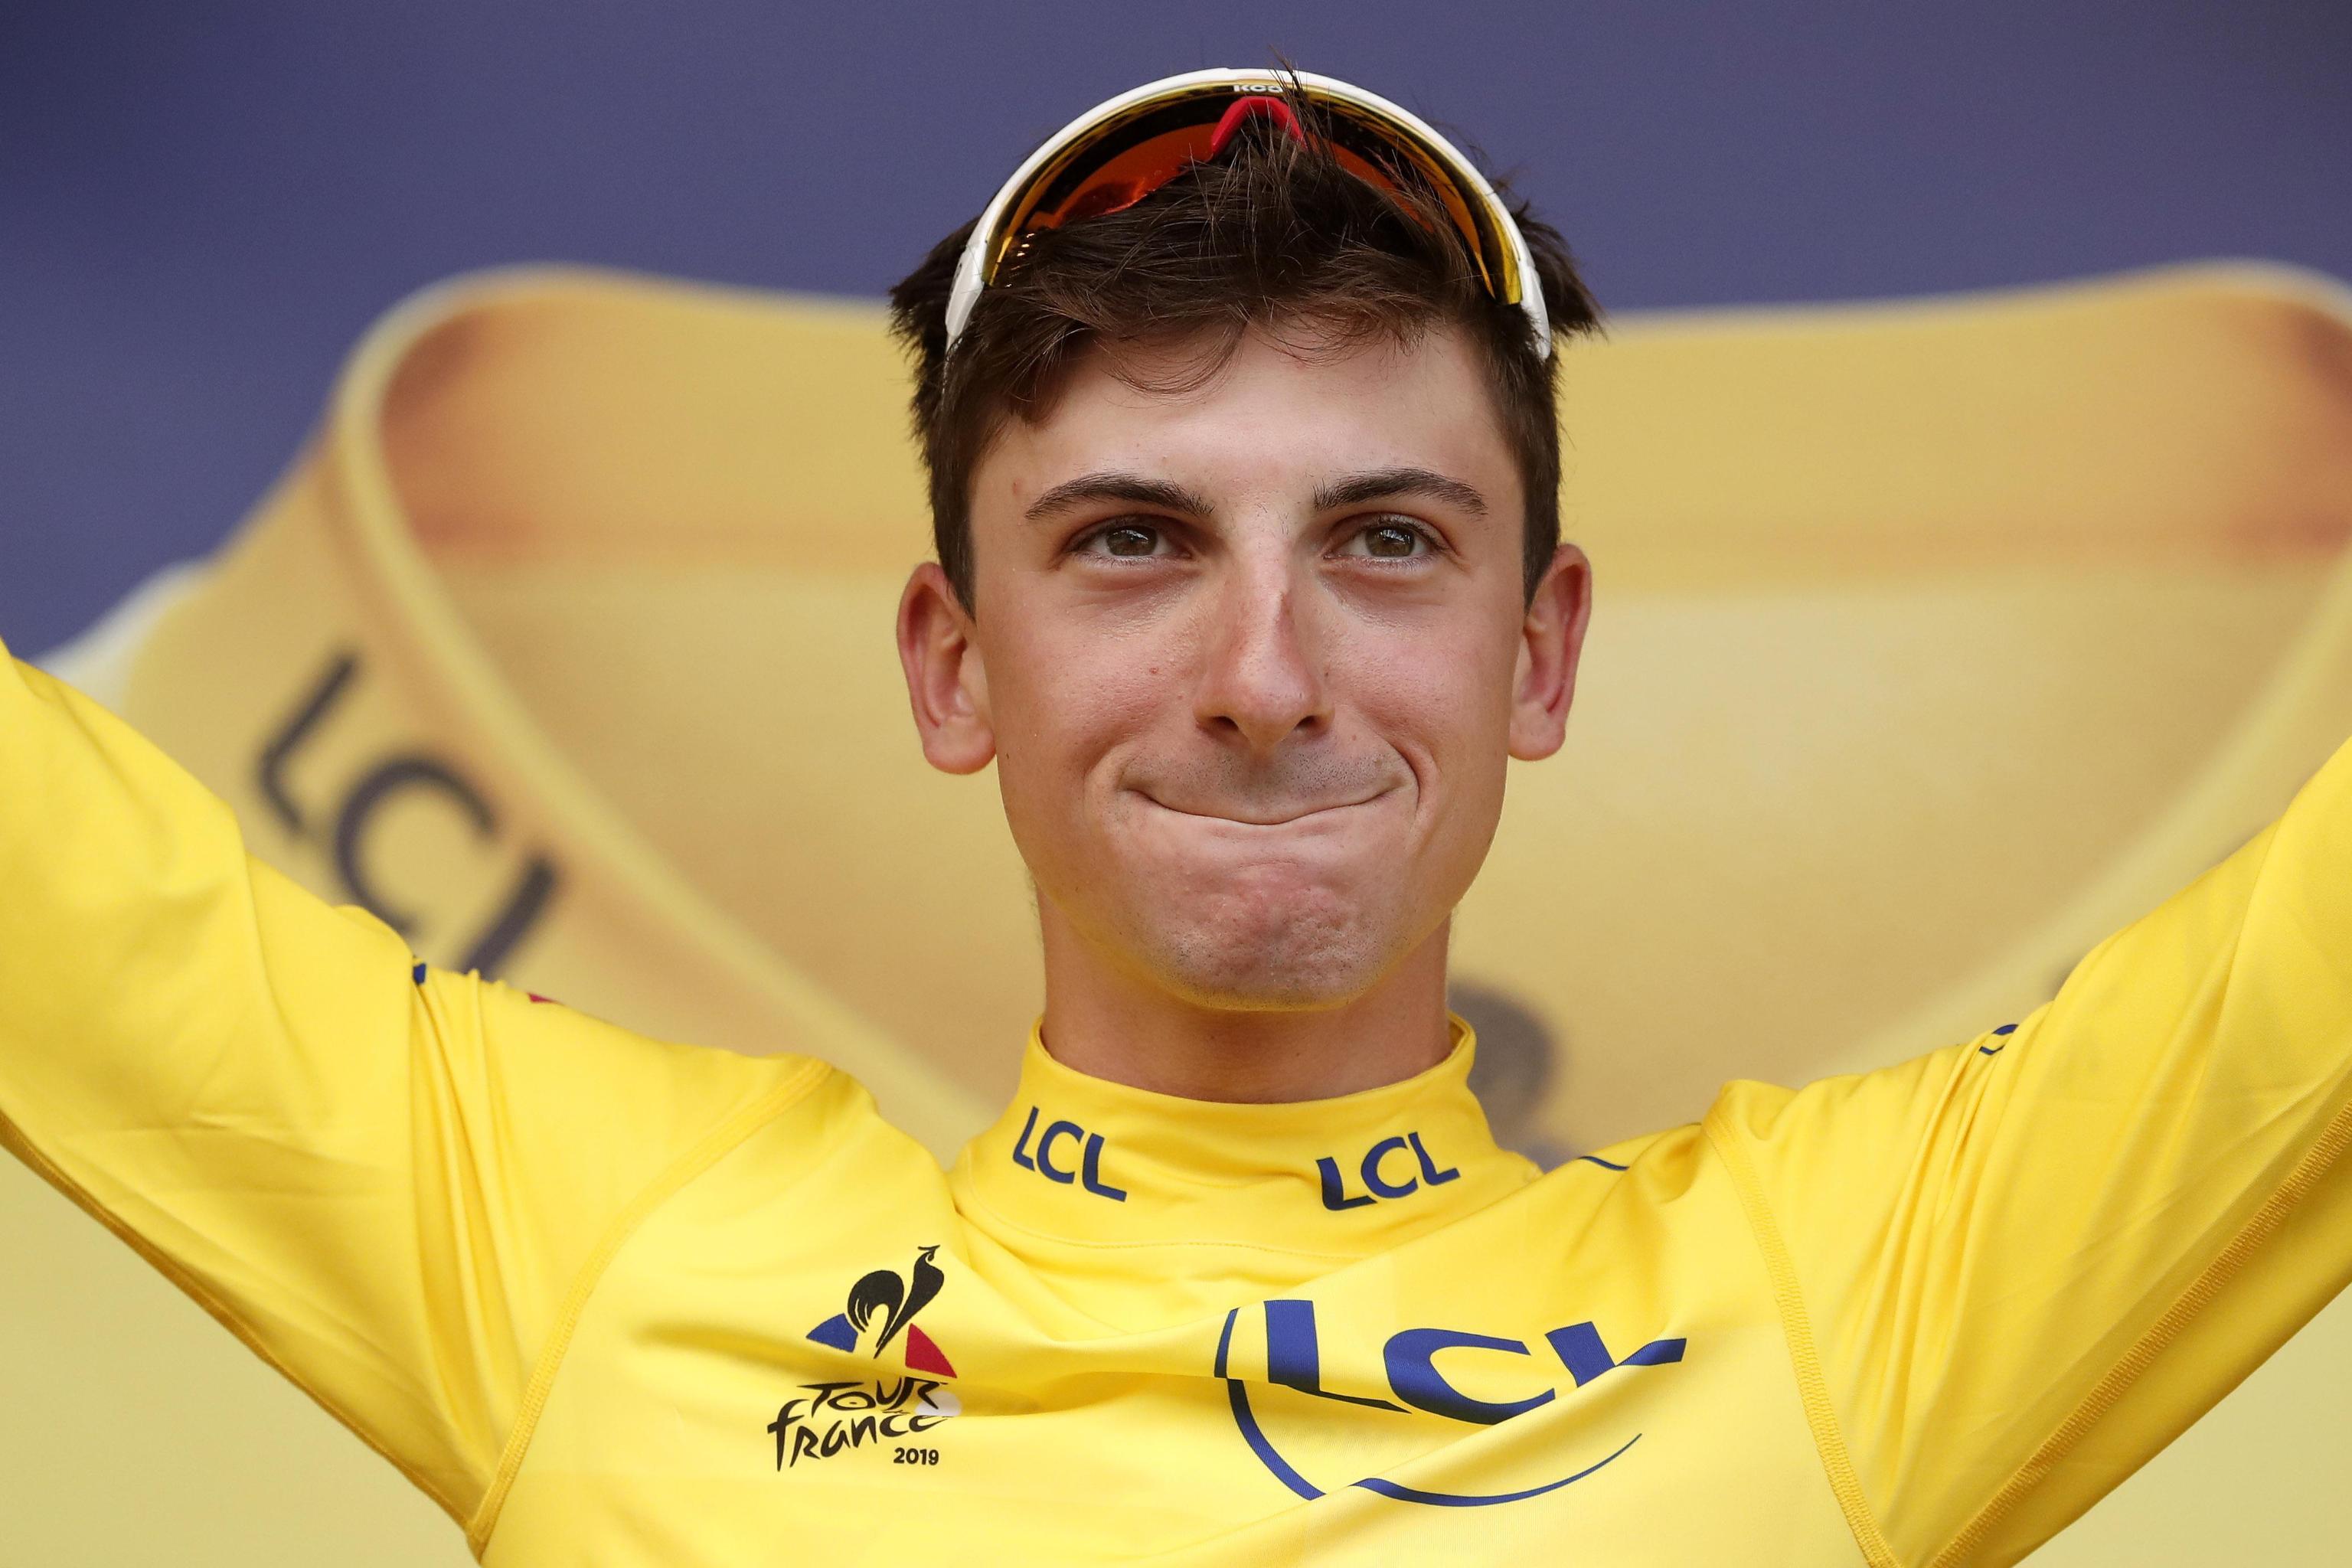 Tour de France 2019 – 6th stage